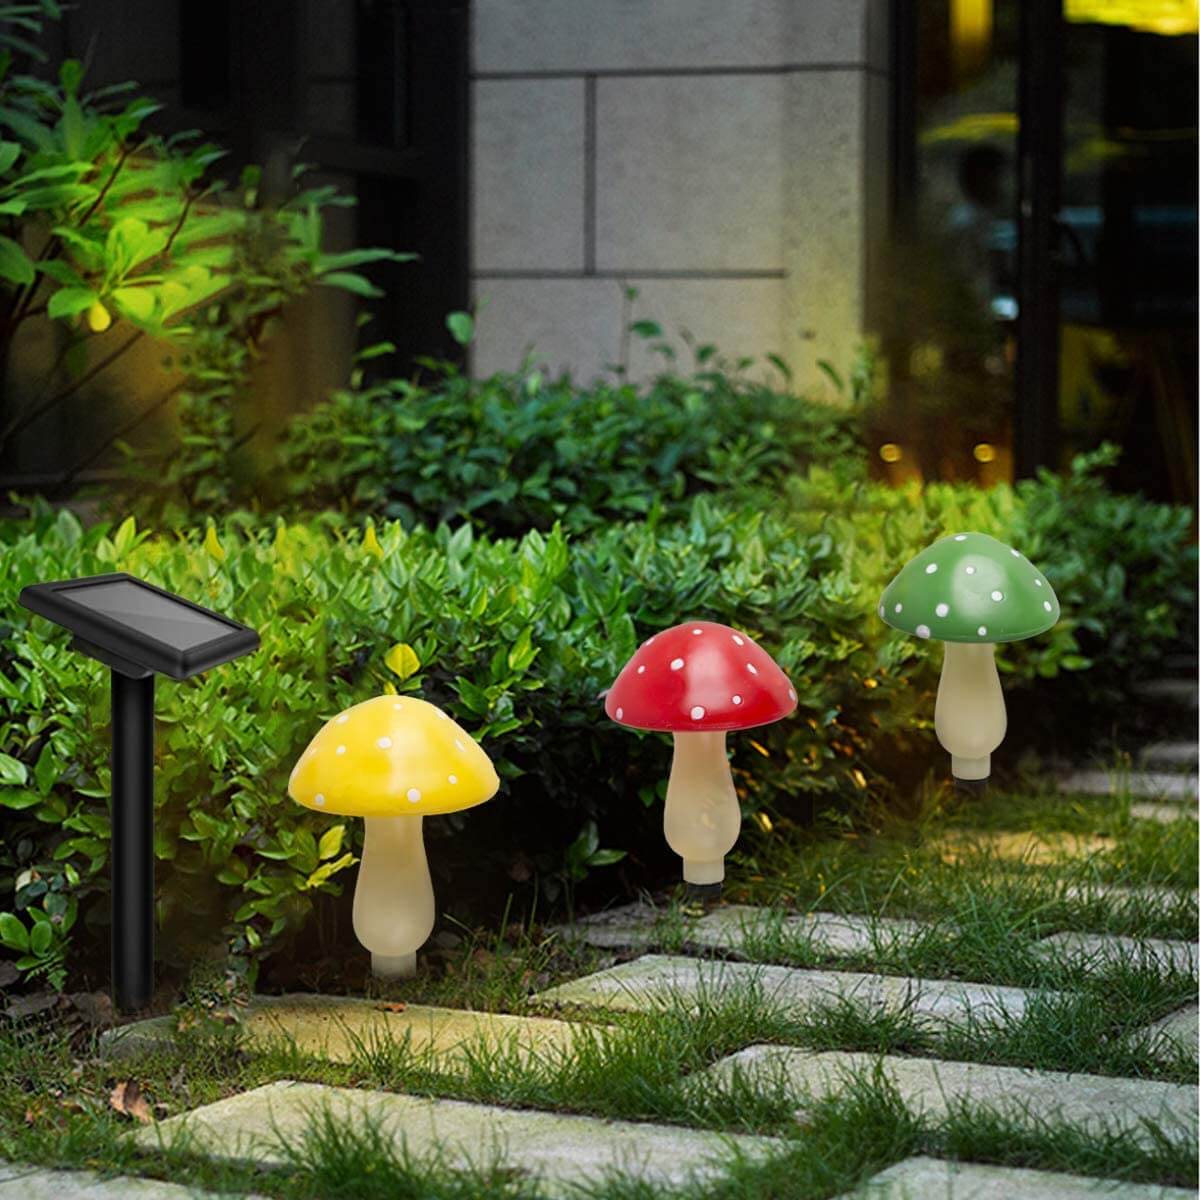 Lucky Star Solar Light Outdoor Mushroom Lamps